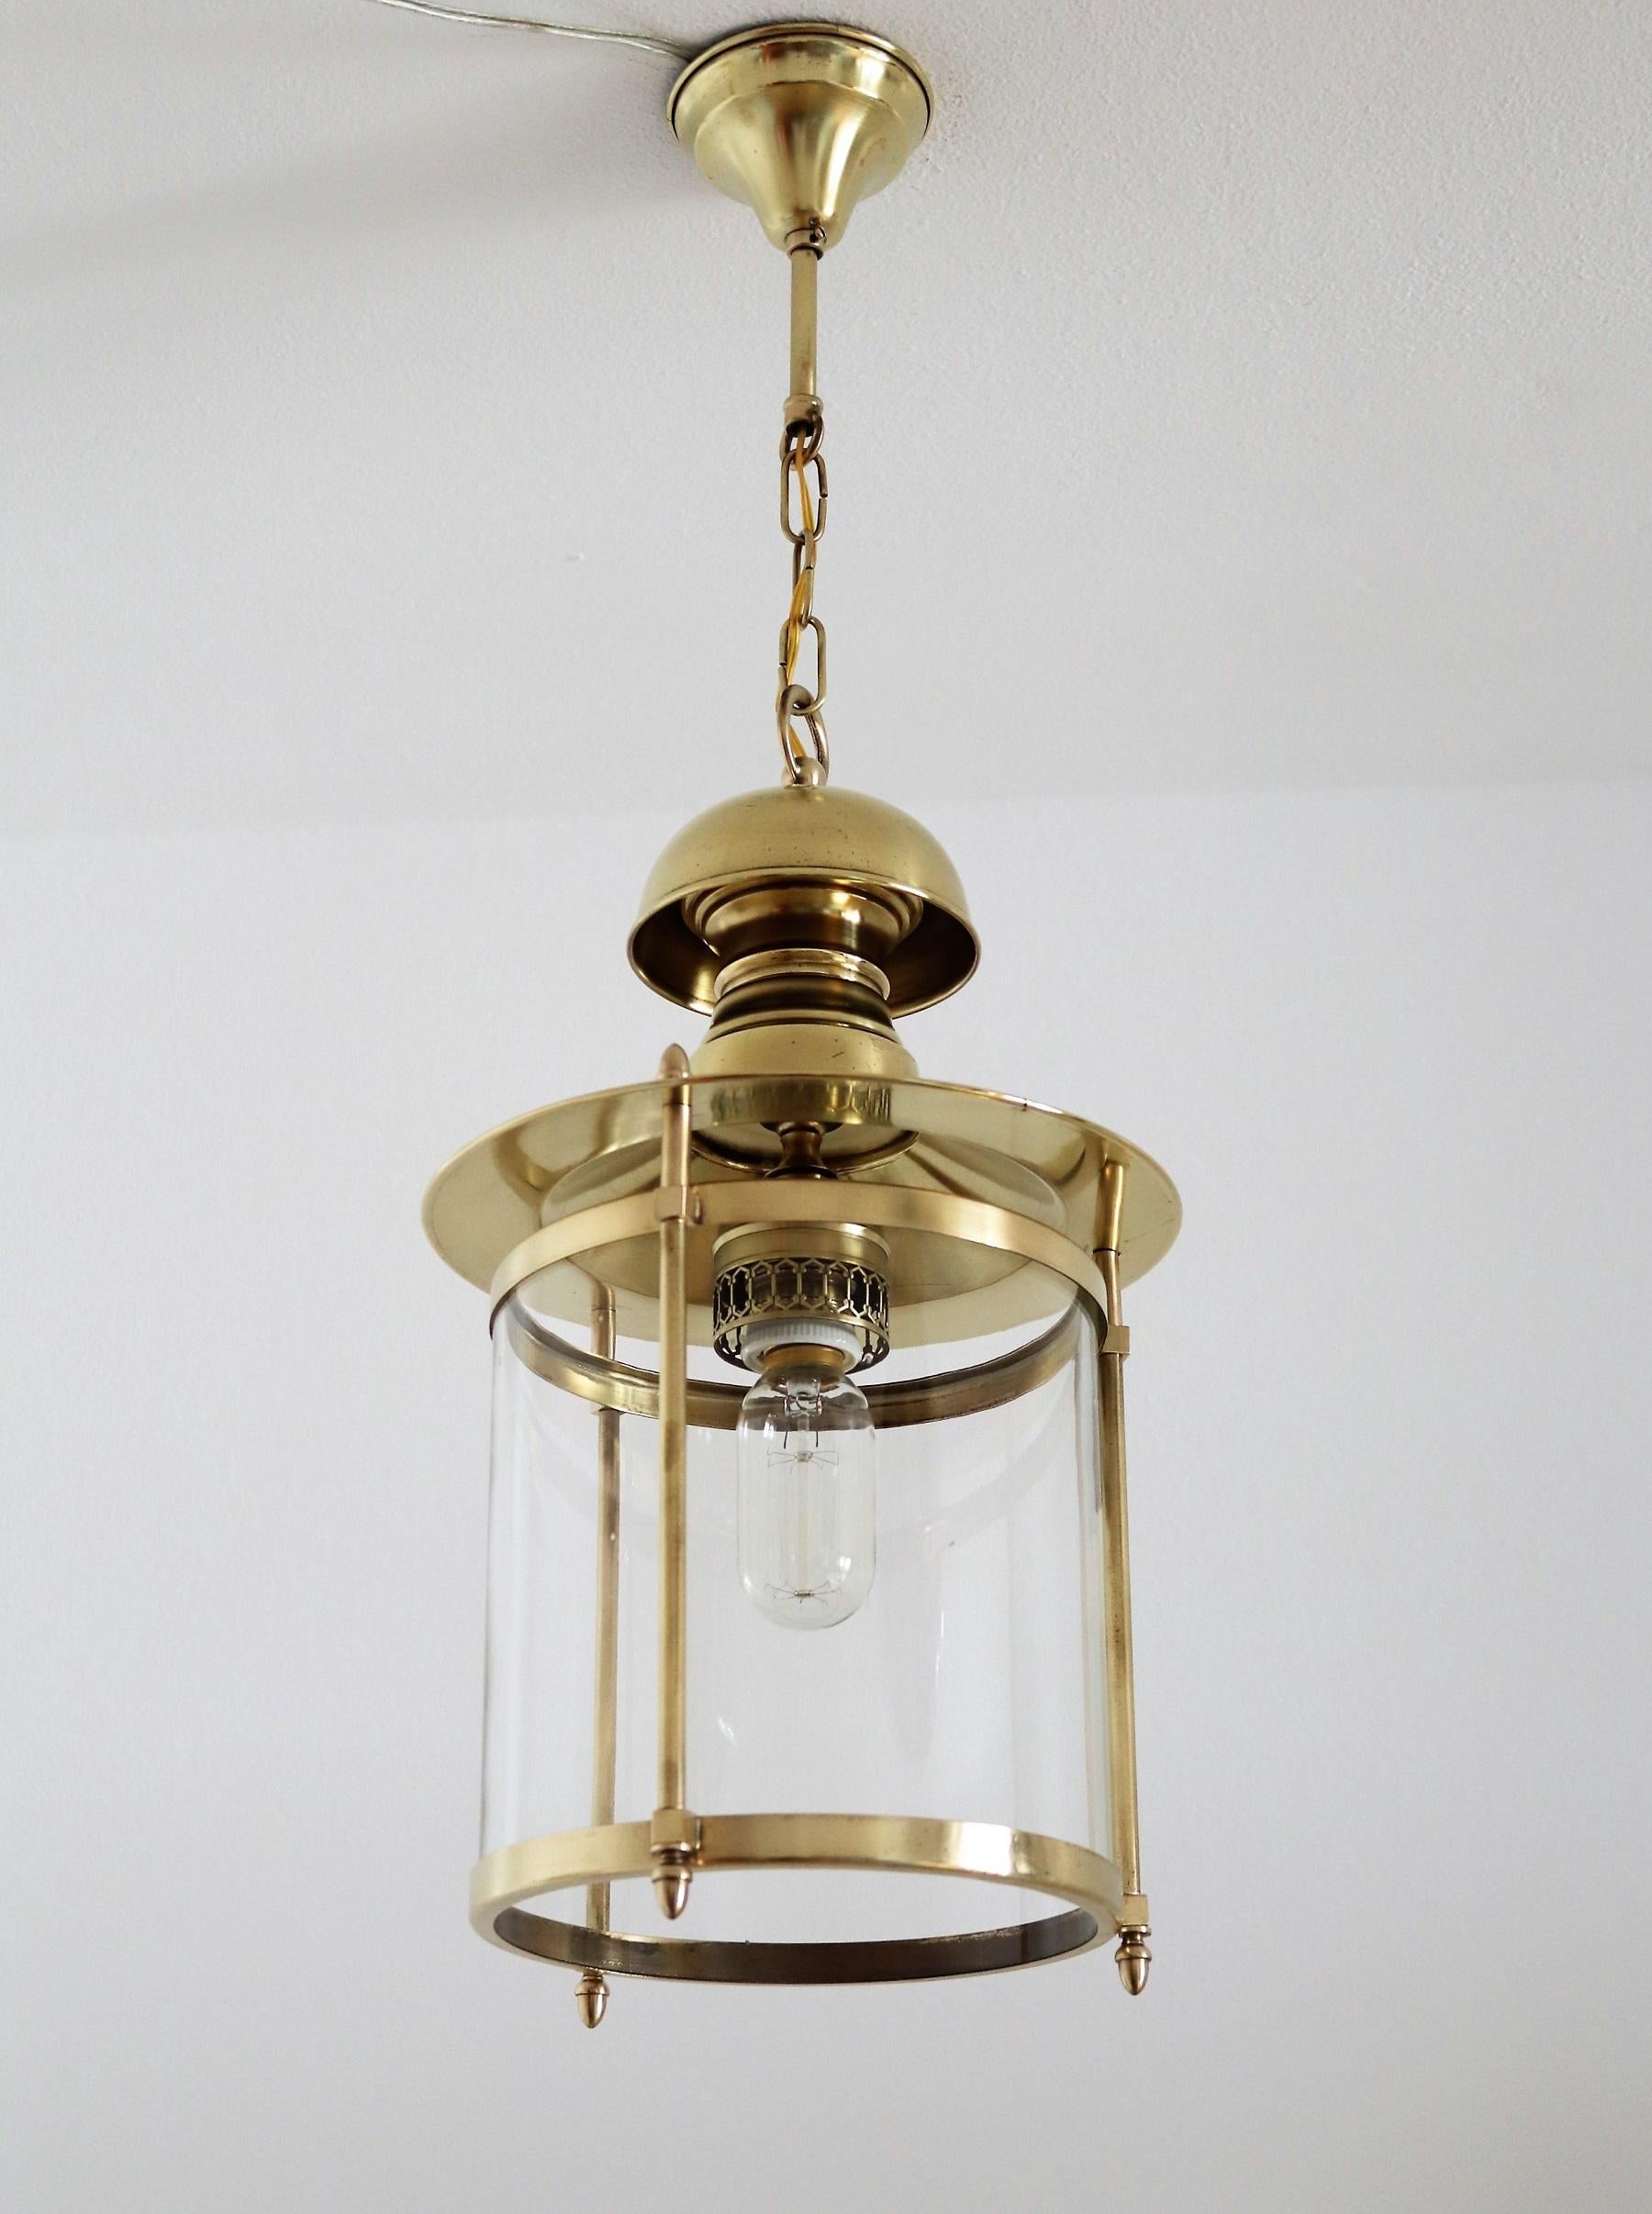 Magnifique lanterne ou lampe suspendue de la fin du milieu du siècle italien, fabriquée dans les années 1960-1970.
La lampe suspendue est en verre transparent, les détails dorés sont en laiton, avec la rosace et la chaîne d'origine.
Très bon état